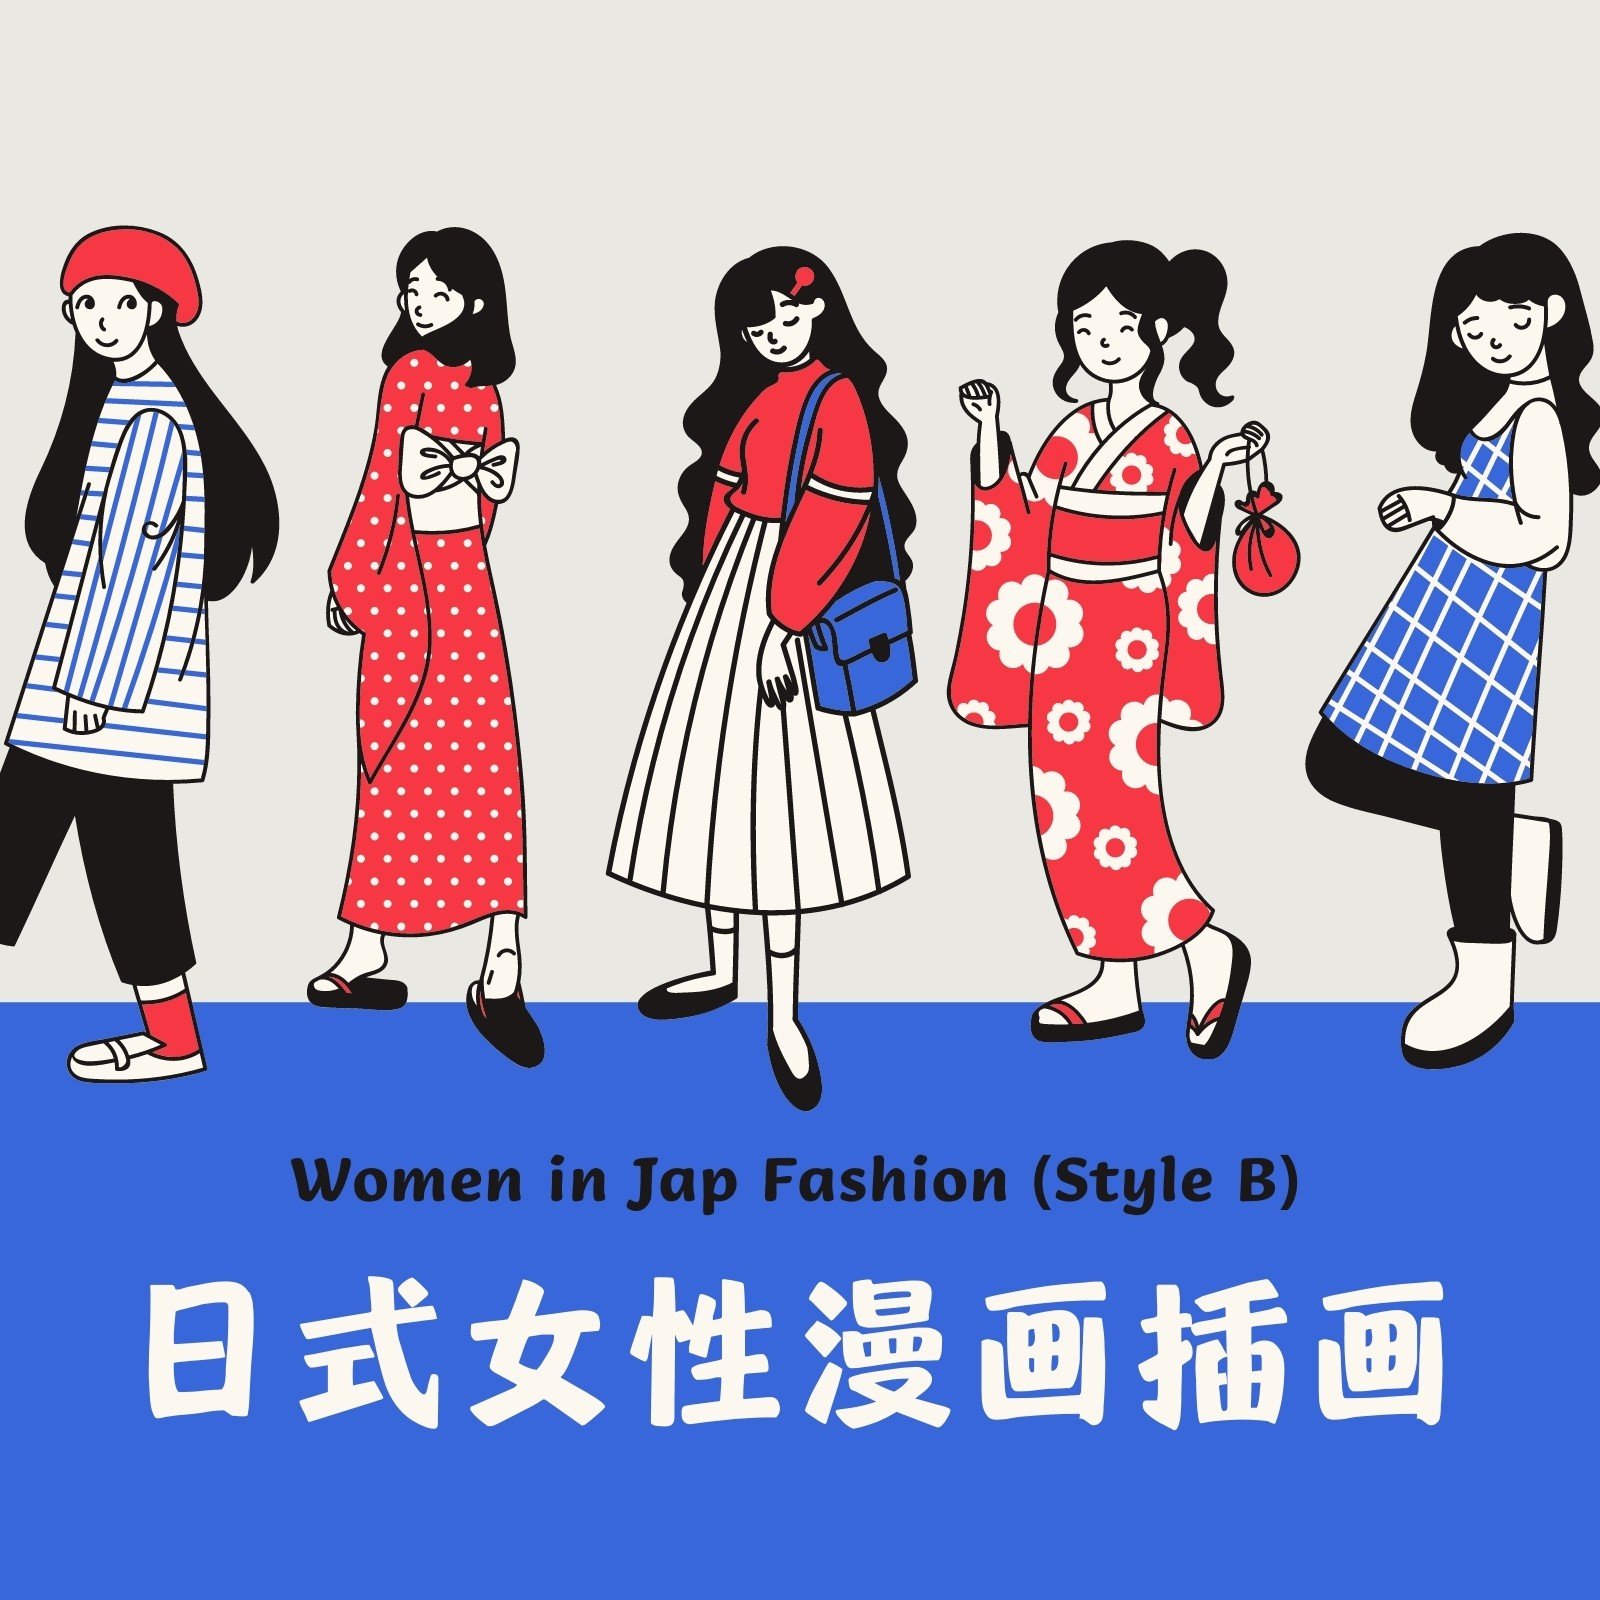 亚洲日式女性人物可爱漫画插画元素